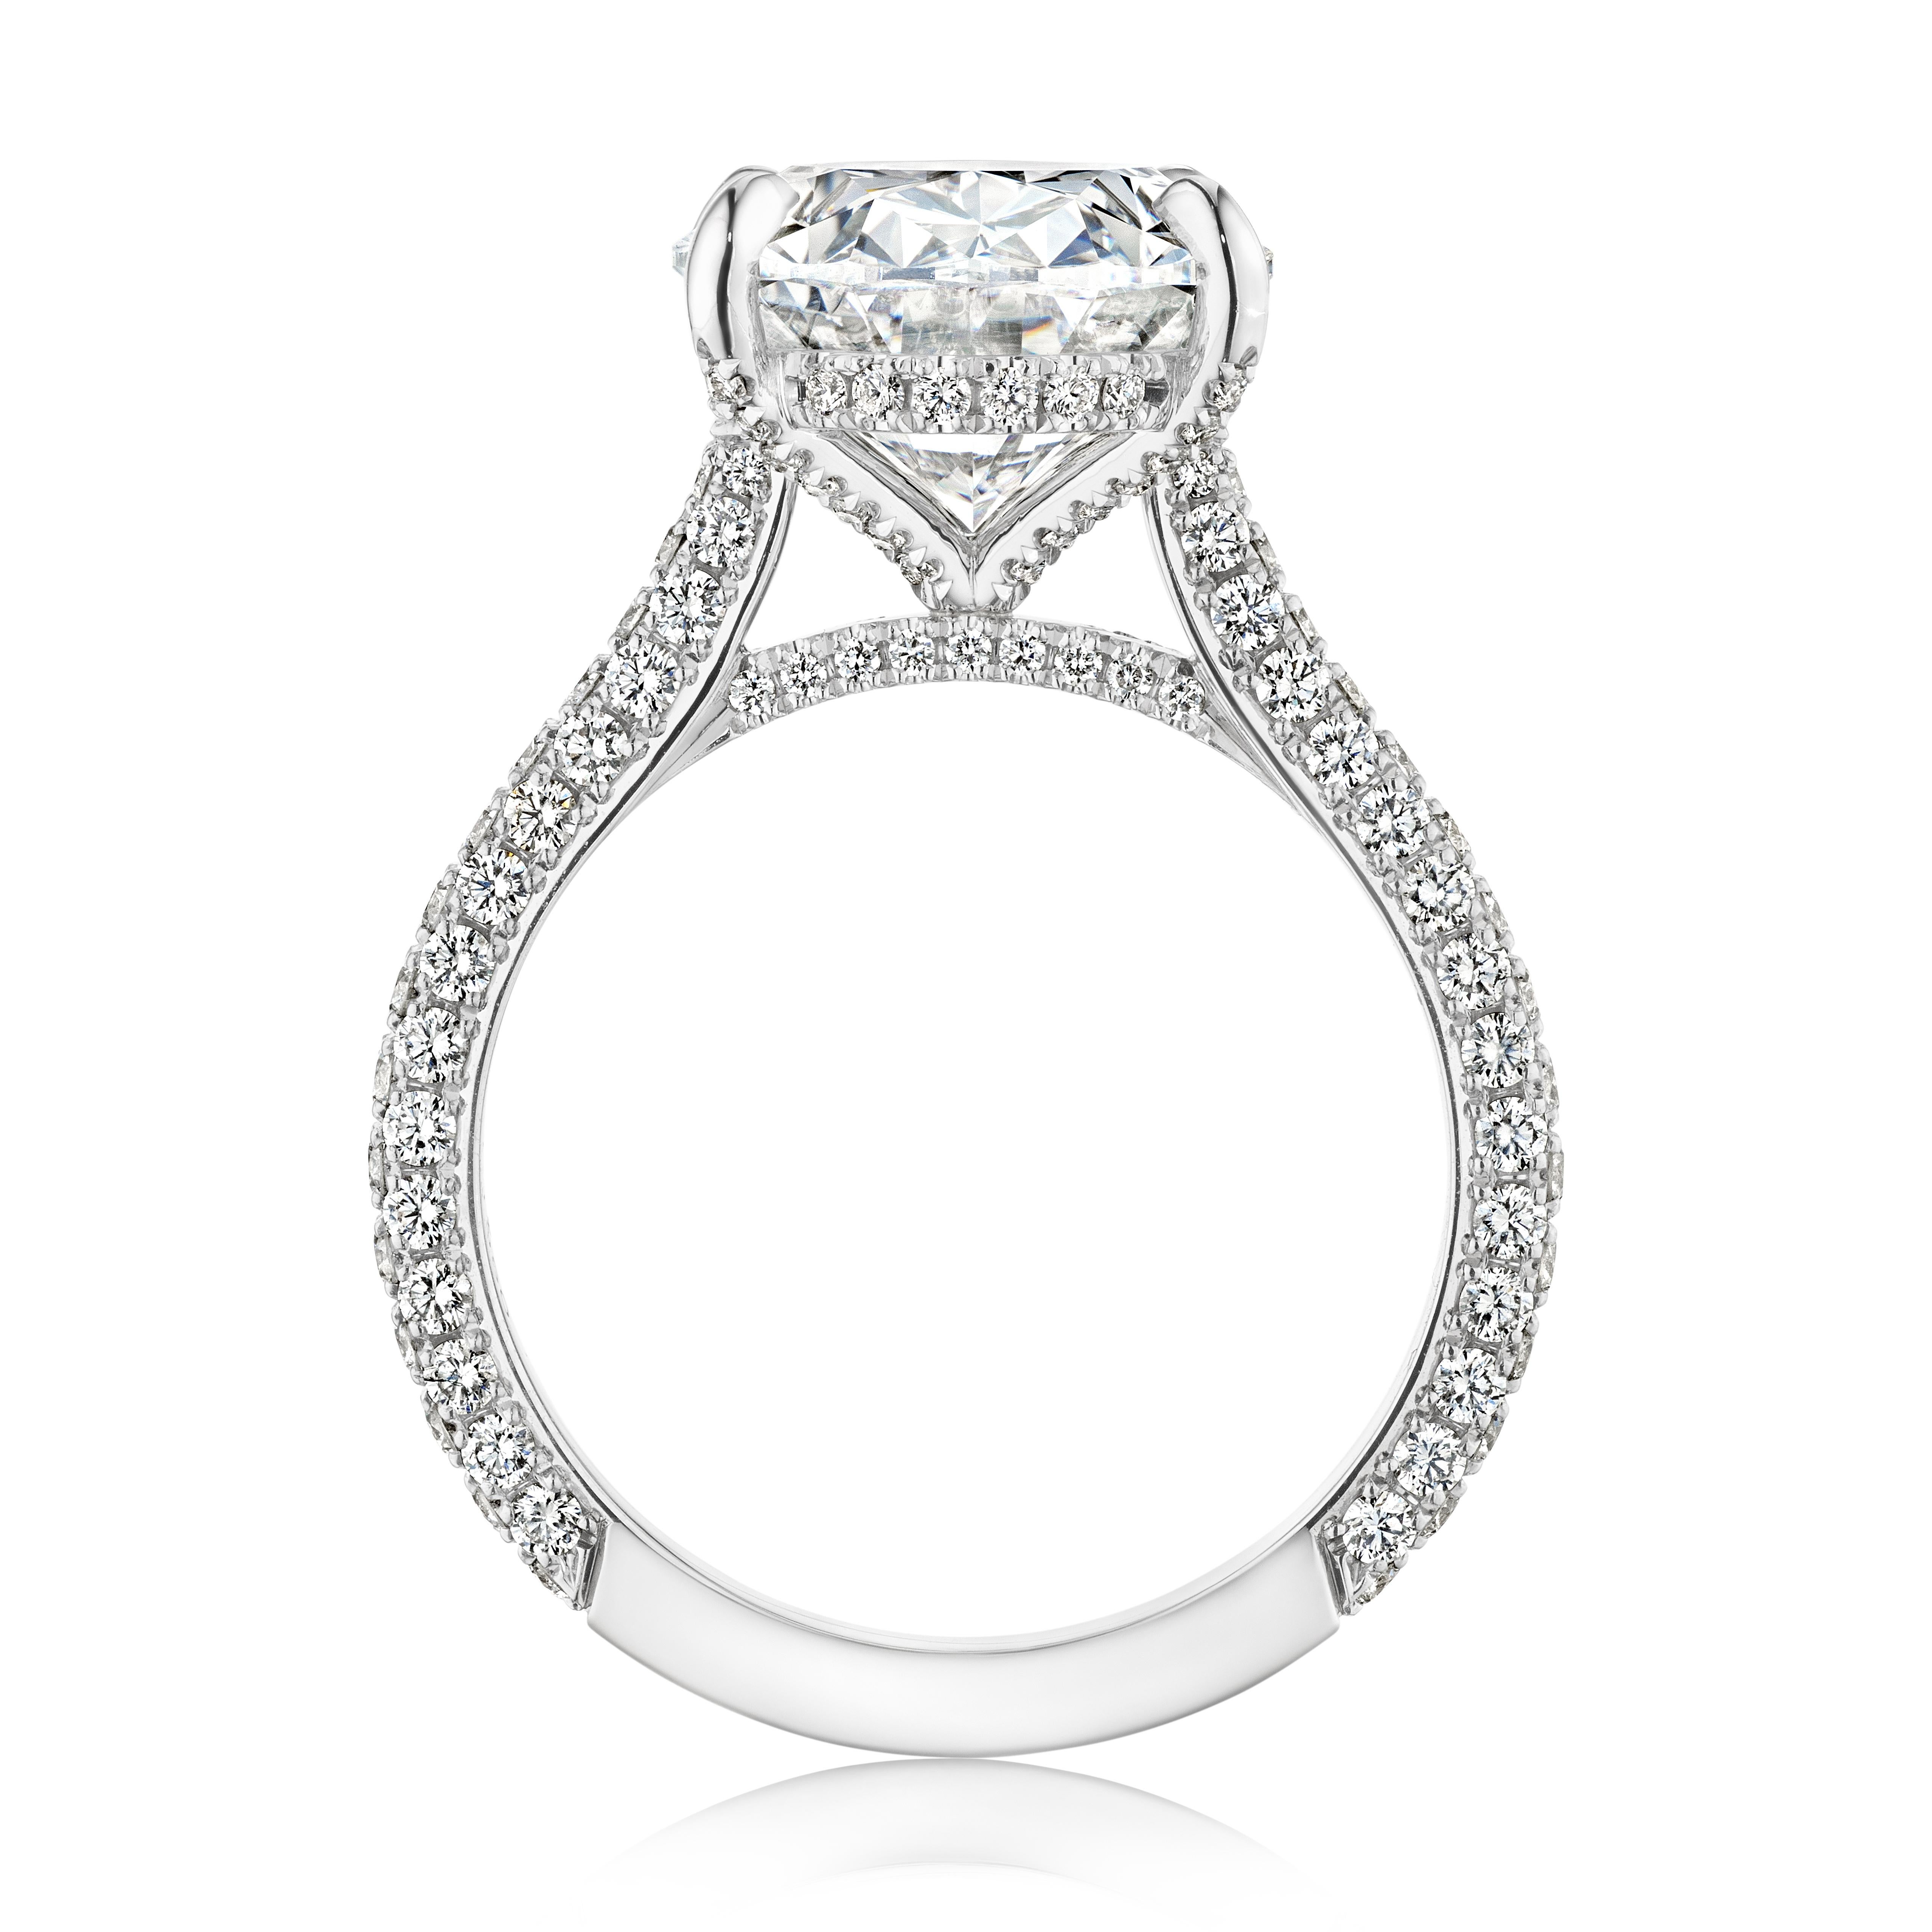 6 carat oval diamond ring